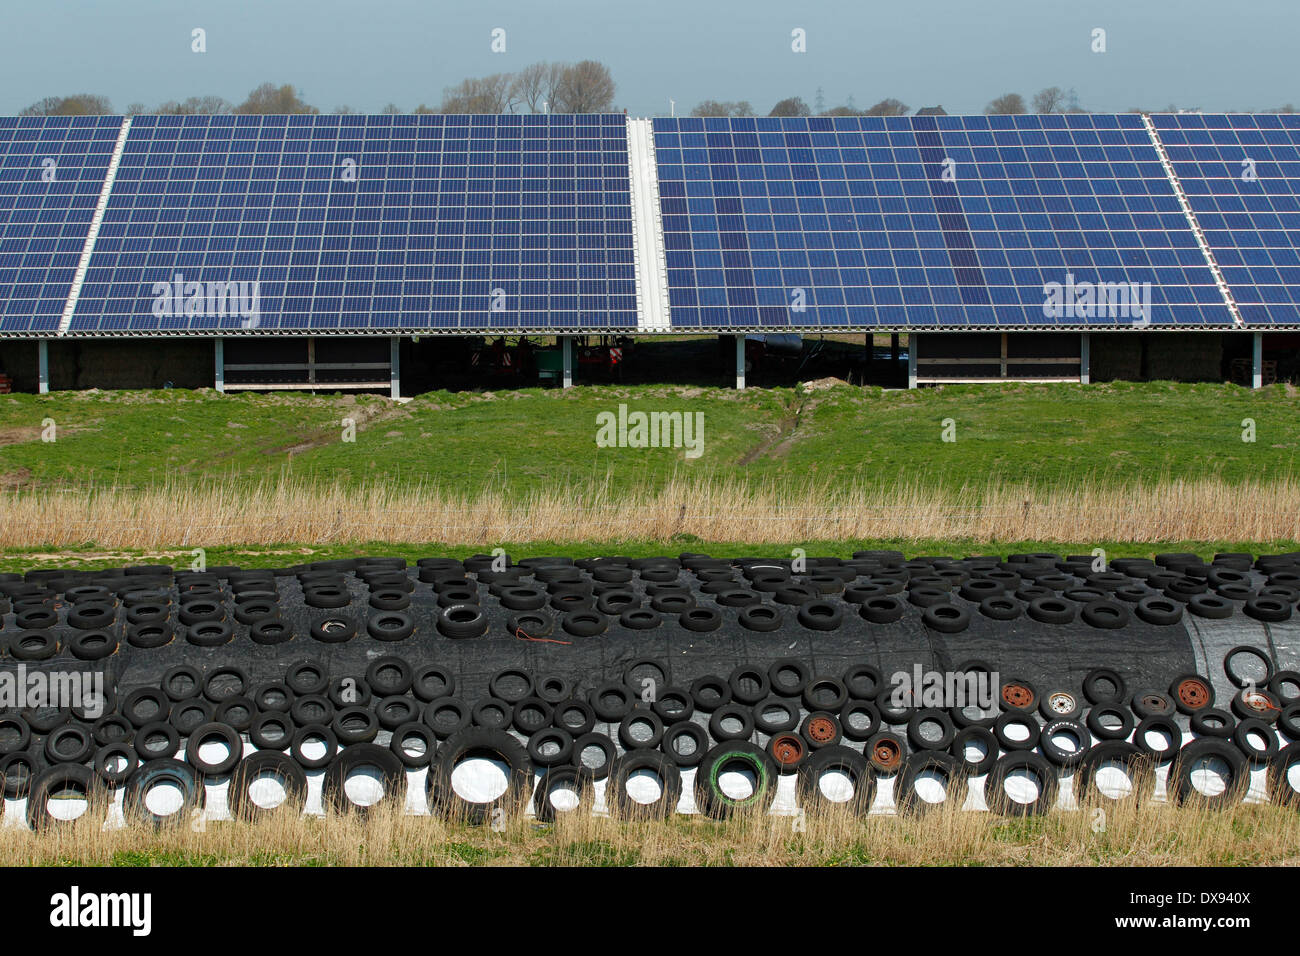 Photovoltaik plant Stock Photo